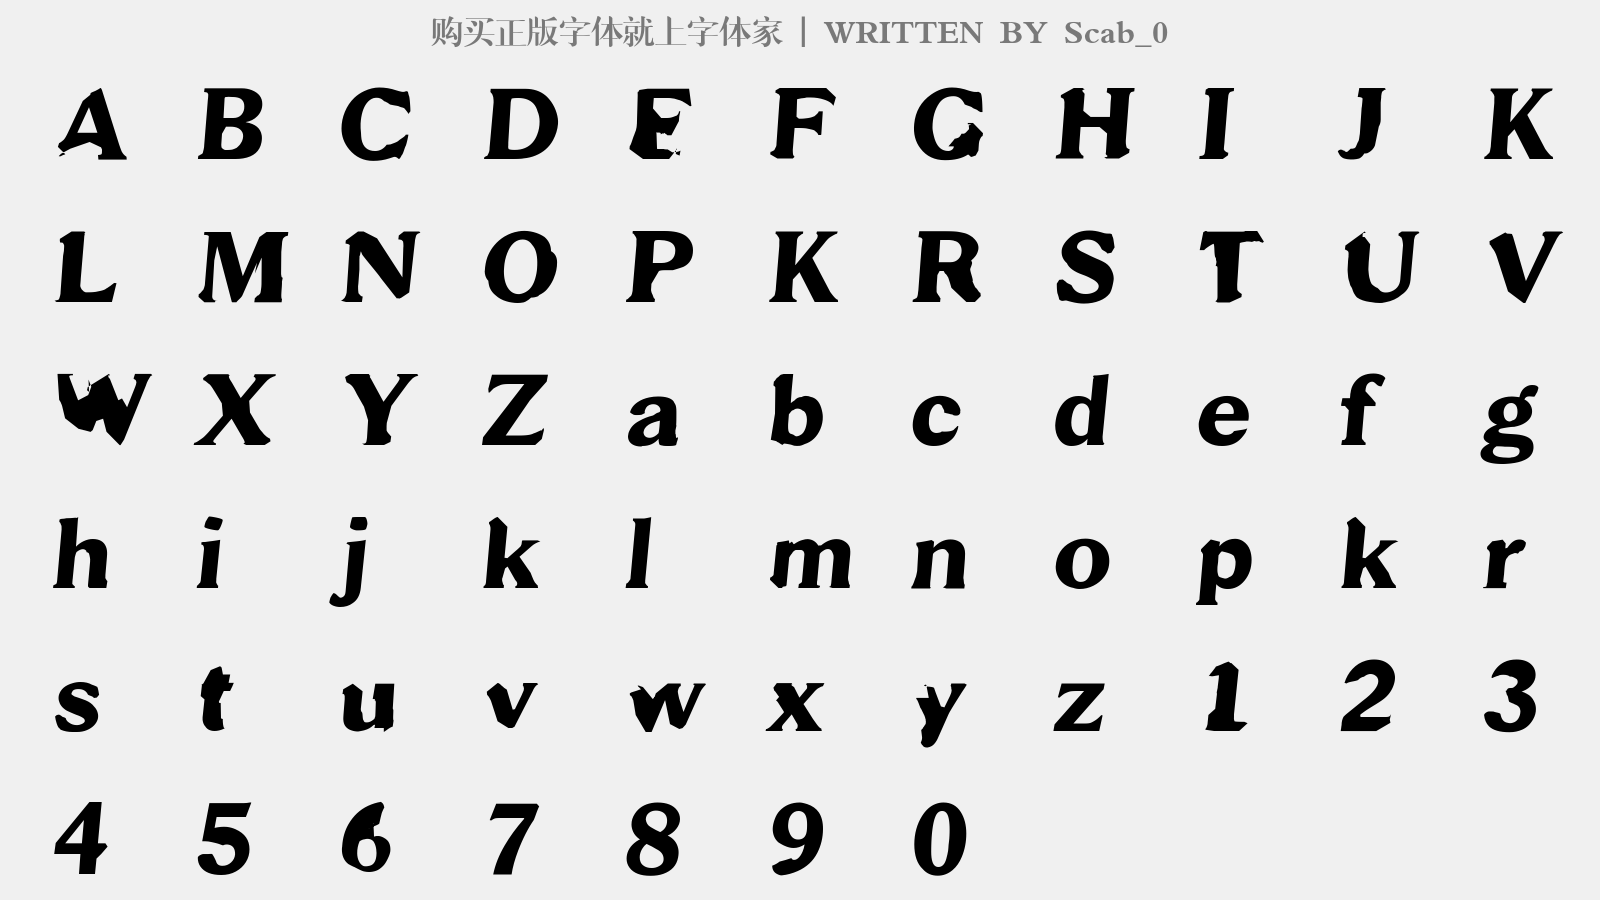 Scab_0 - 大写字母/小写字母/数字